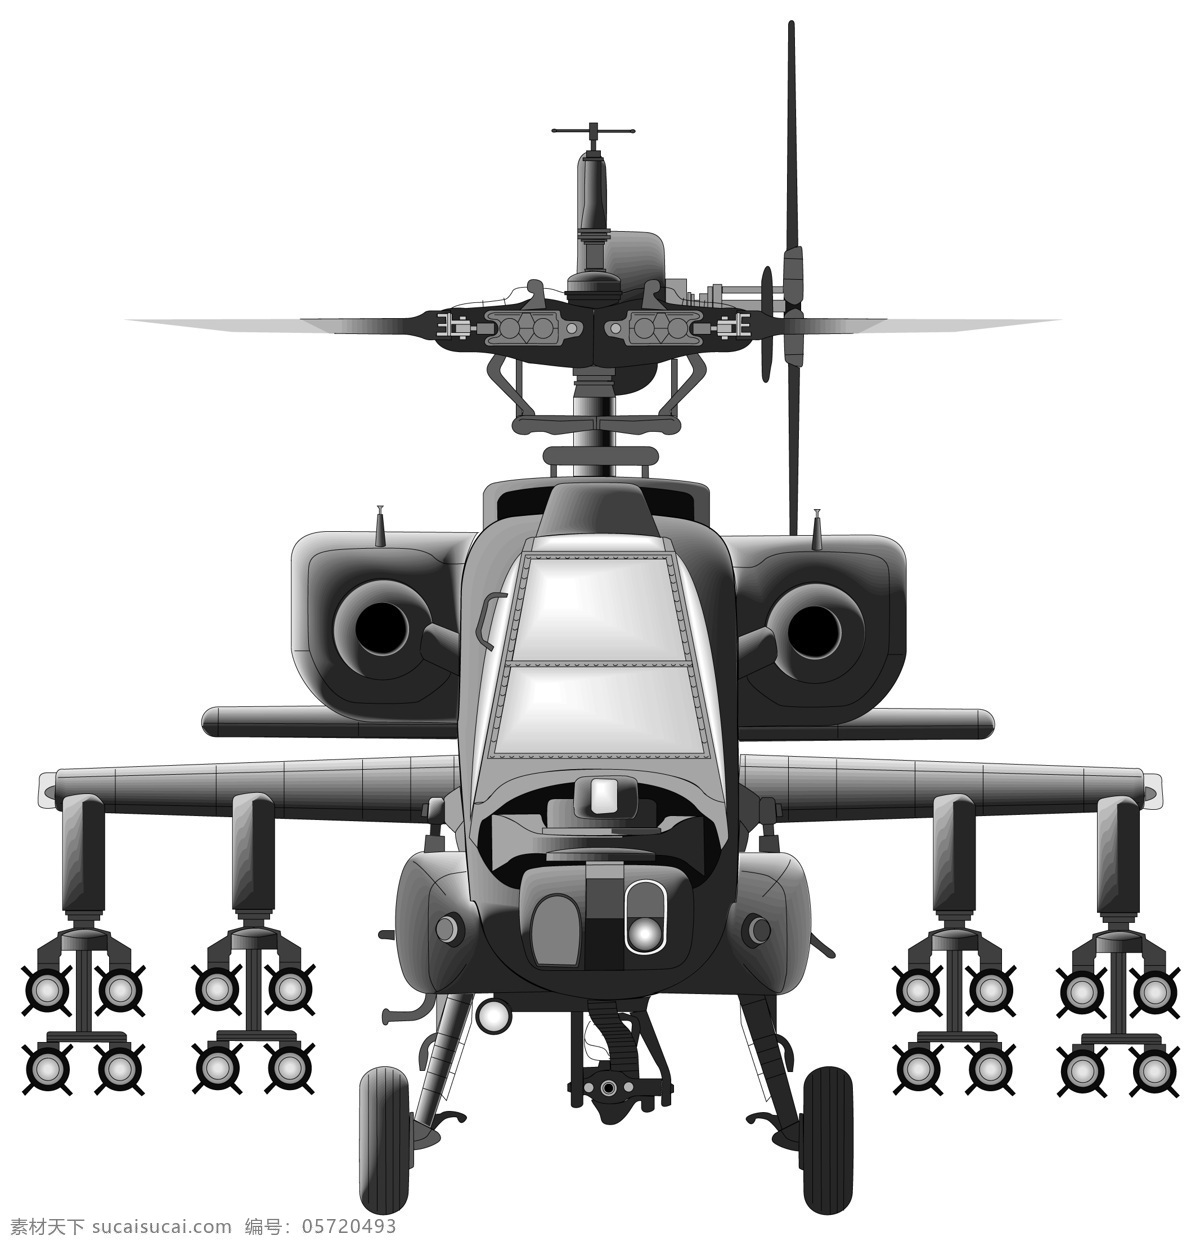 卡通直升机 卡通 直升机 插图 绘图 配图 动漫动画